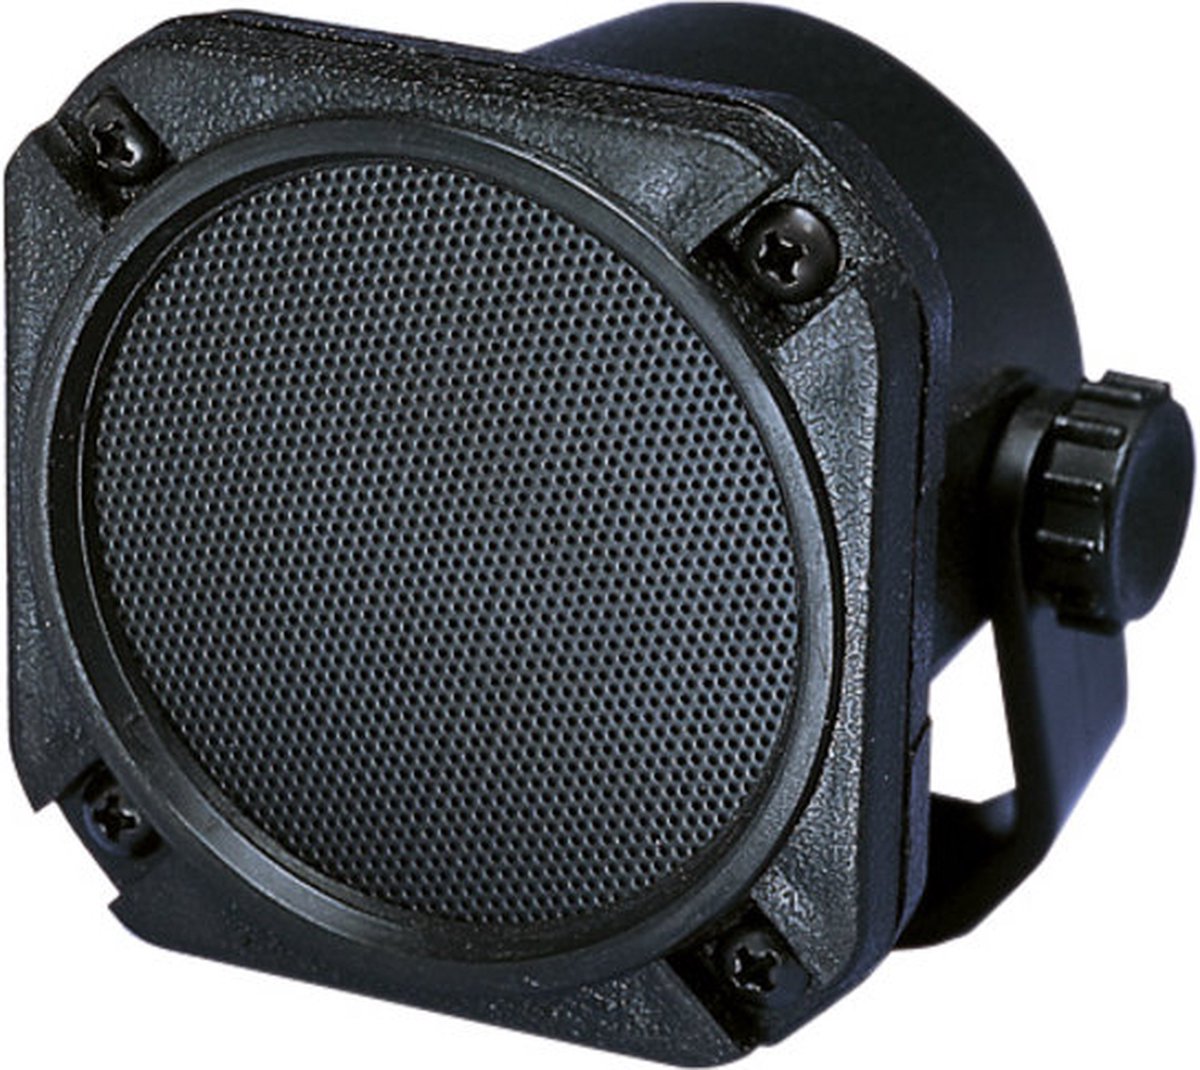 Eagle B185 externe speaker voor 27MC bakjes | robuust & weerbestendig - Eagle